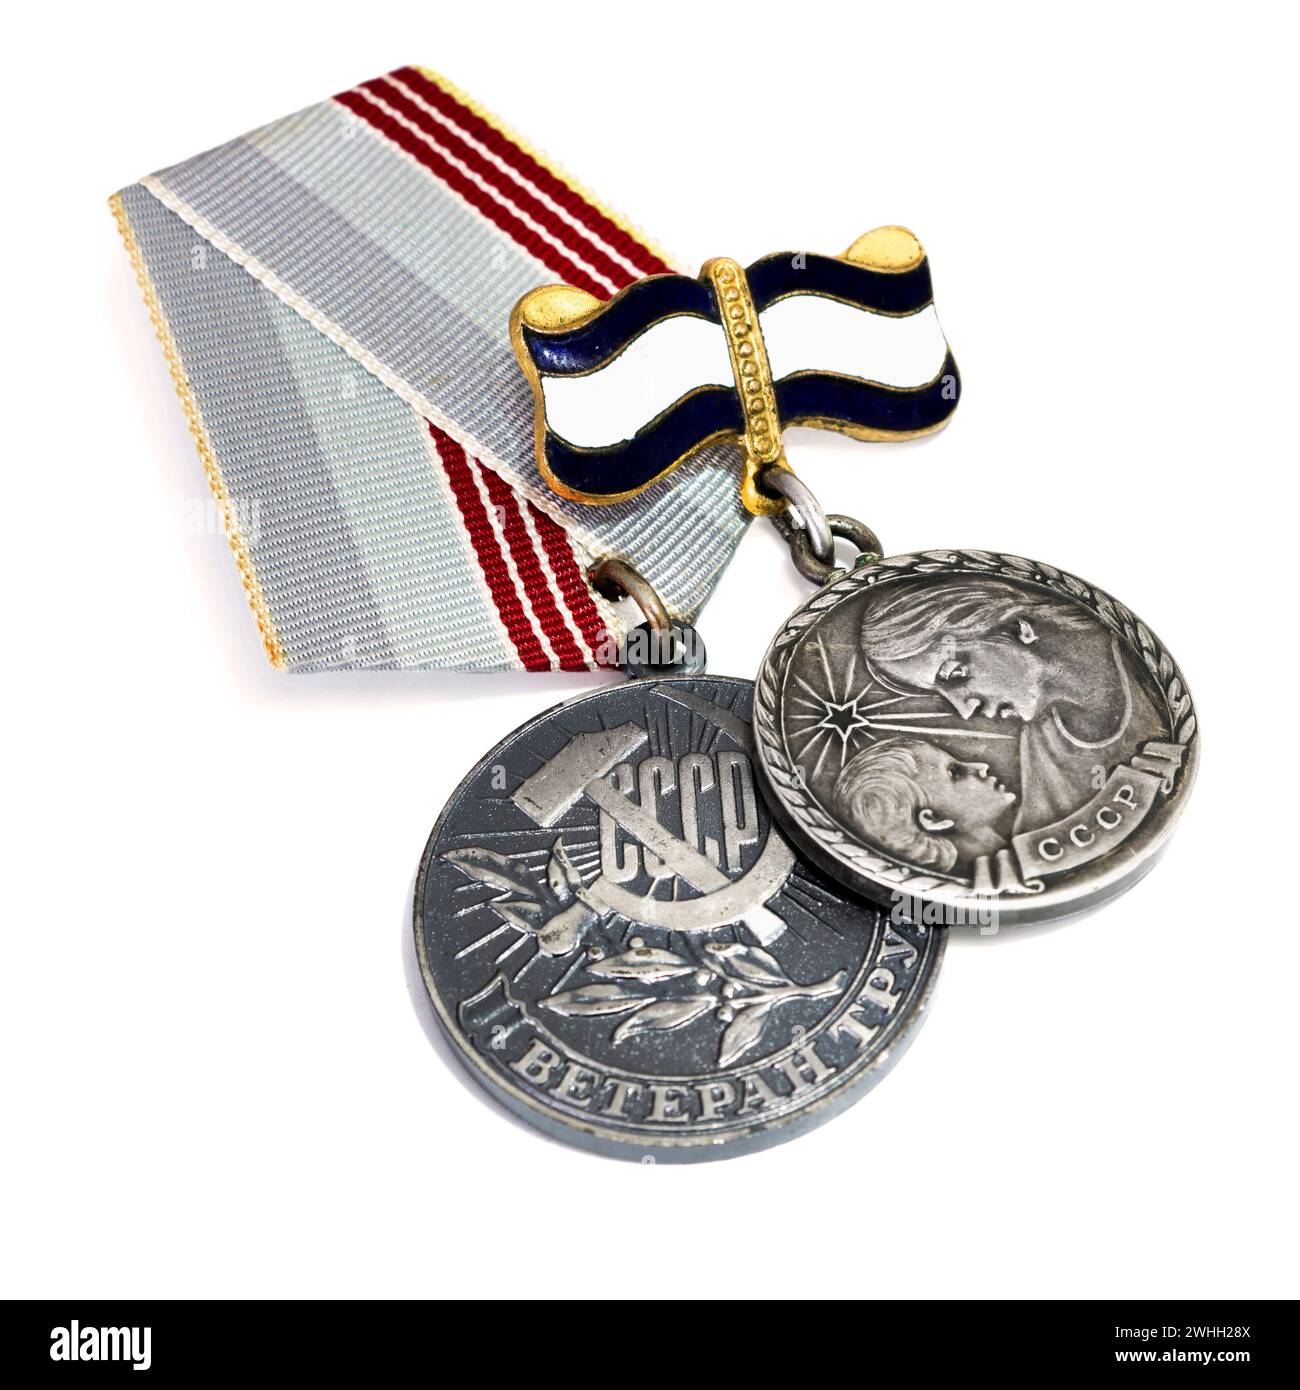 Premi sovietici. Medaglia con iscrizione: Veterano del lavoro. Medaglia alla madre eroina con iscrizione: Foto Stock